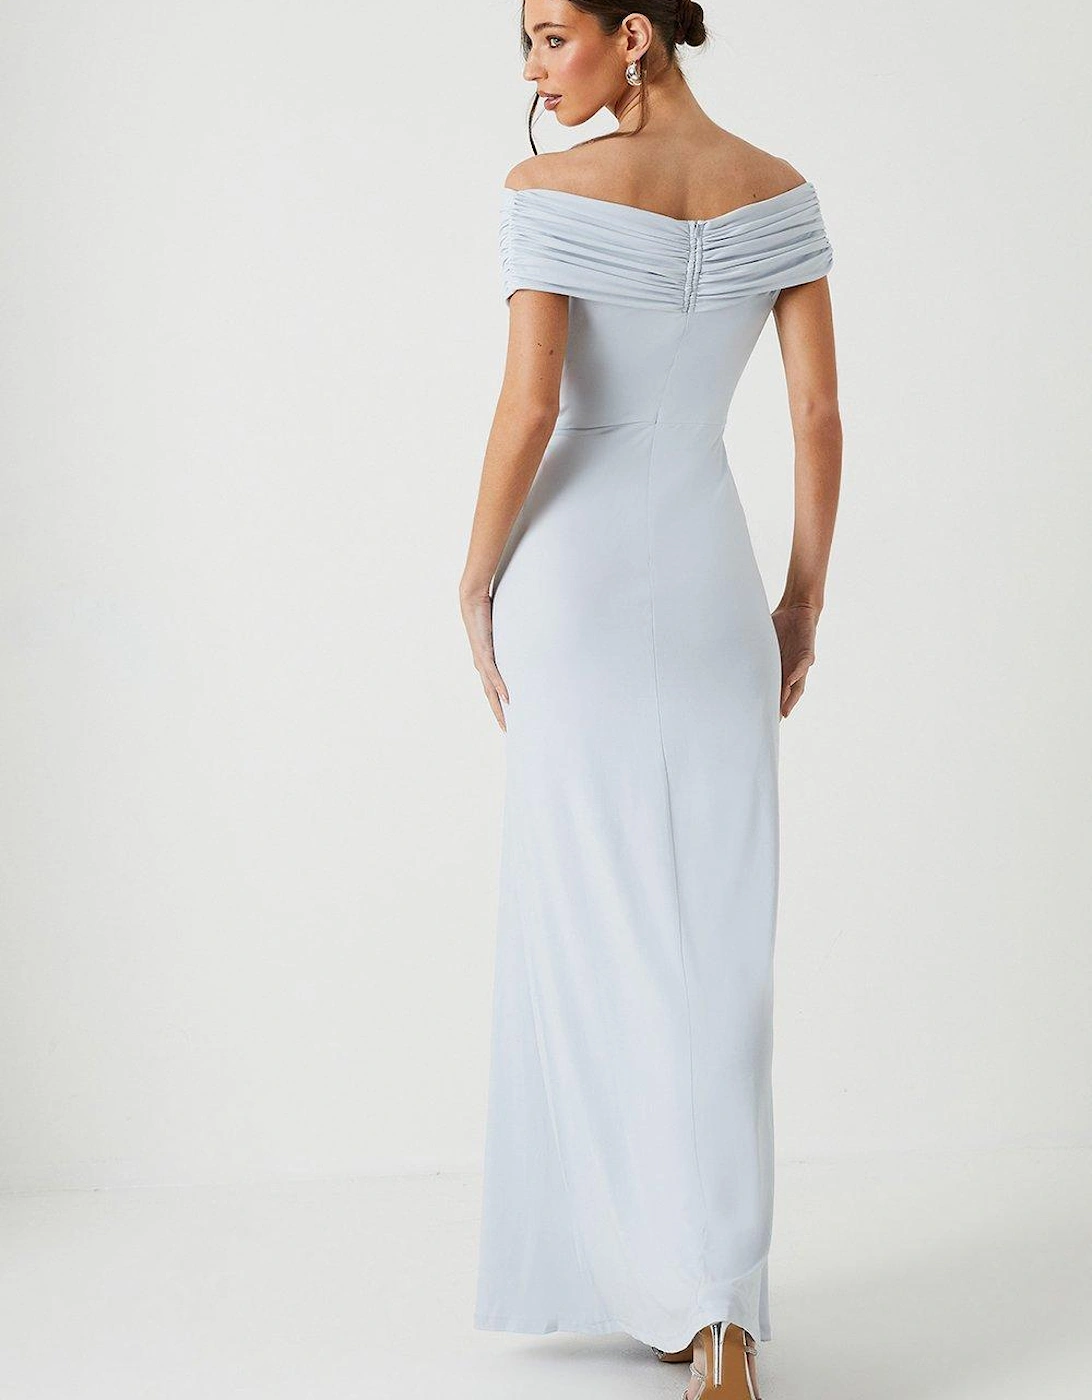 Ruched Bardot Fishtail Slinky Jersey Bridesmaids Maxi Dress